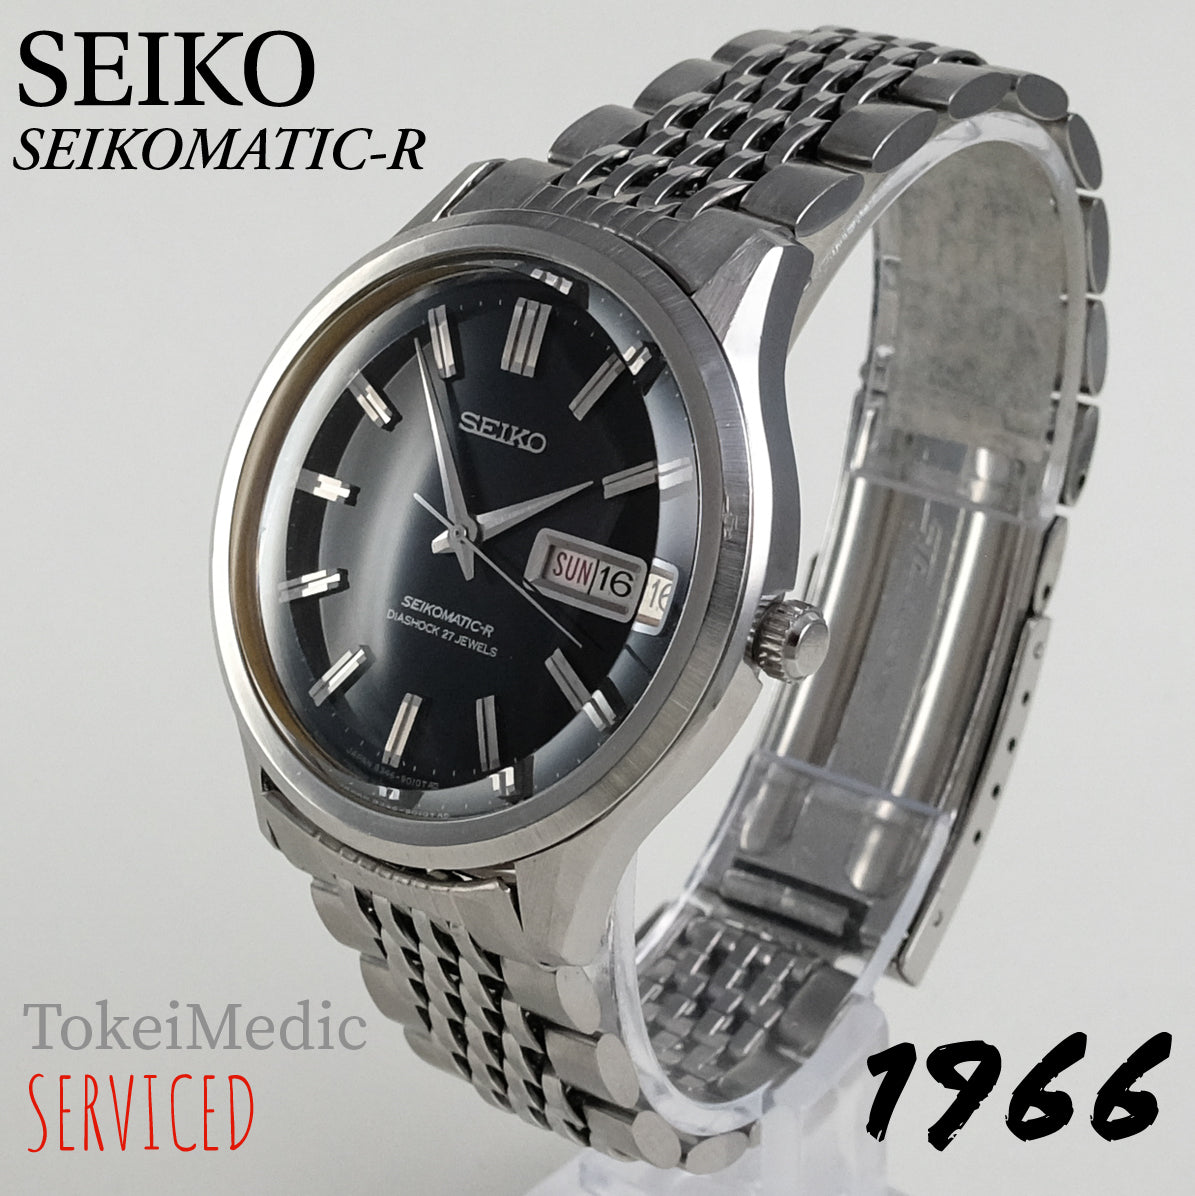 1966 Seiko Seikomatic-R 8346-9010 – TokeiMedic